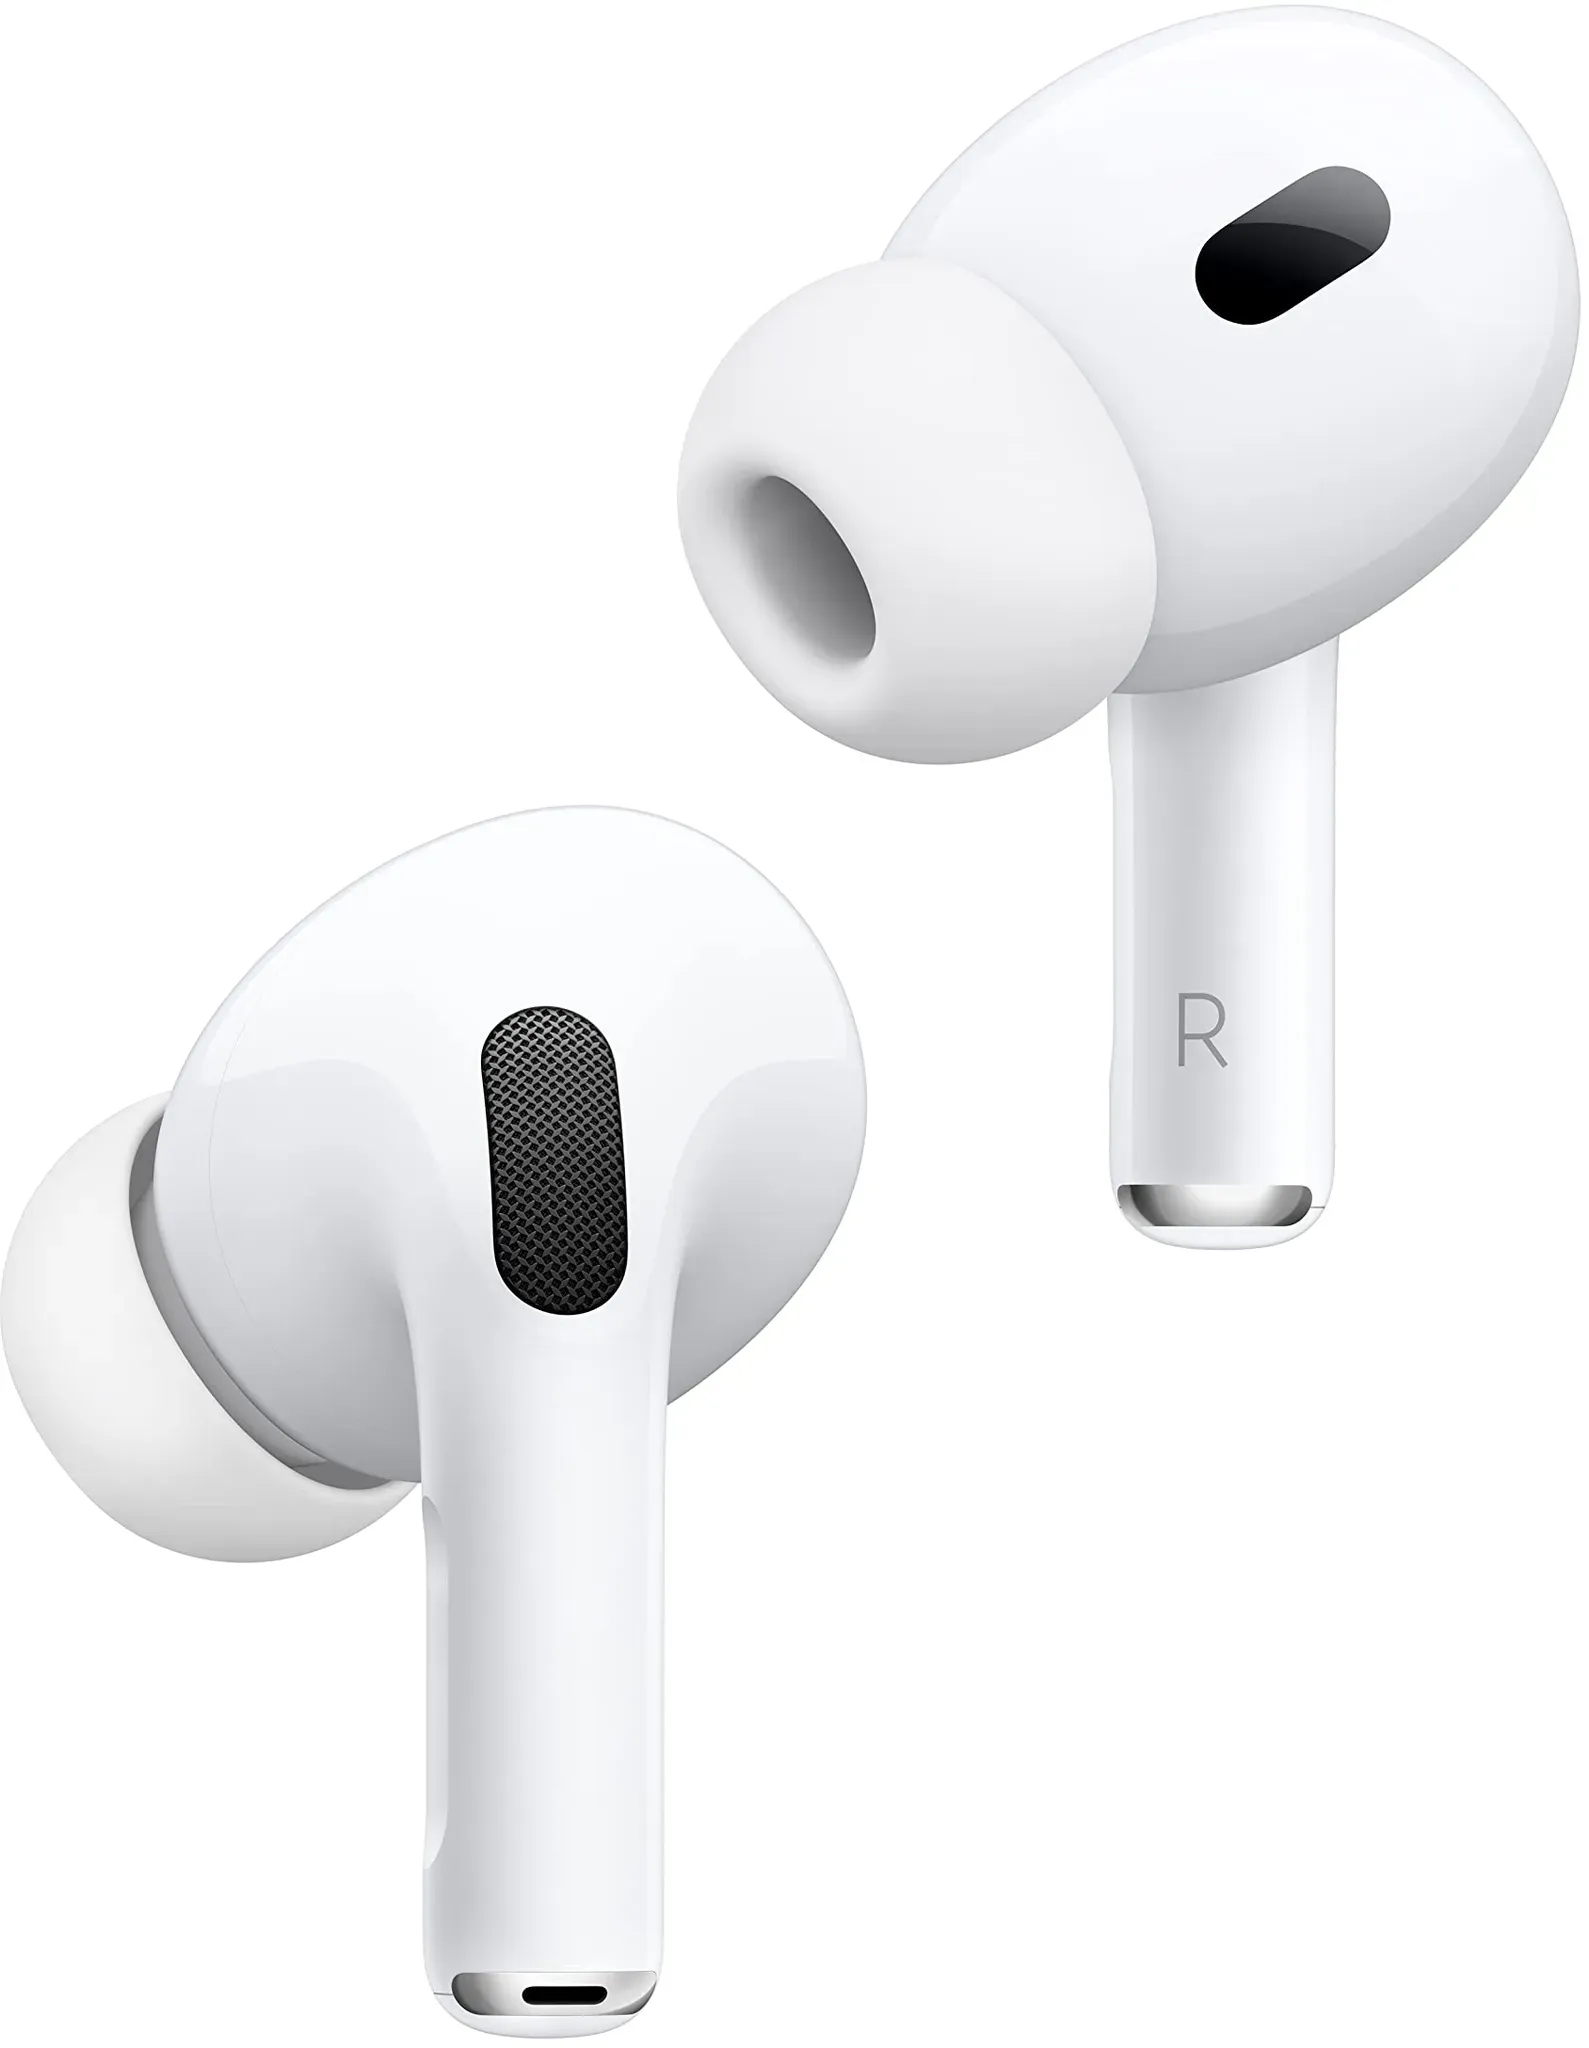 Apple AirPods Pro (2. Generation, USB-C) mit MagSafe In-Ear Kopfhörer weiß (Neu differenzbesteuert)